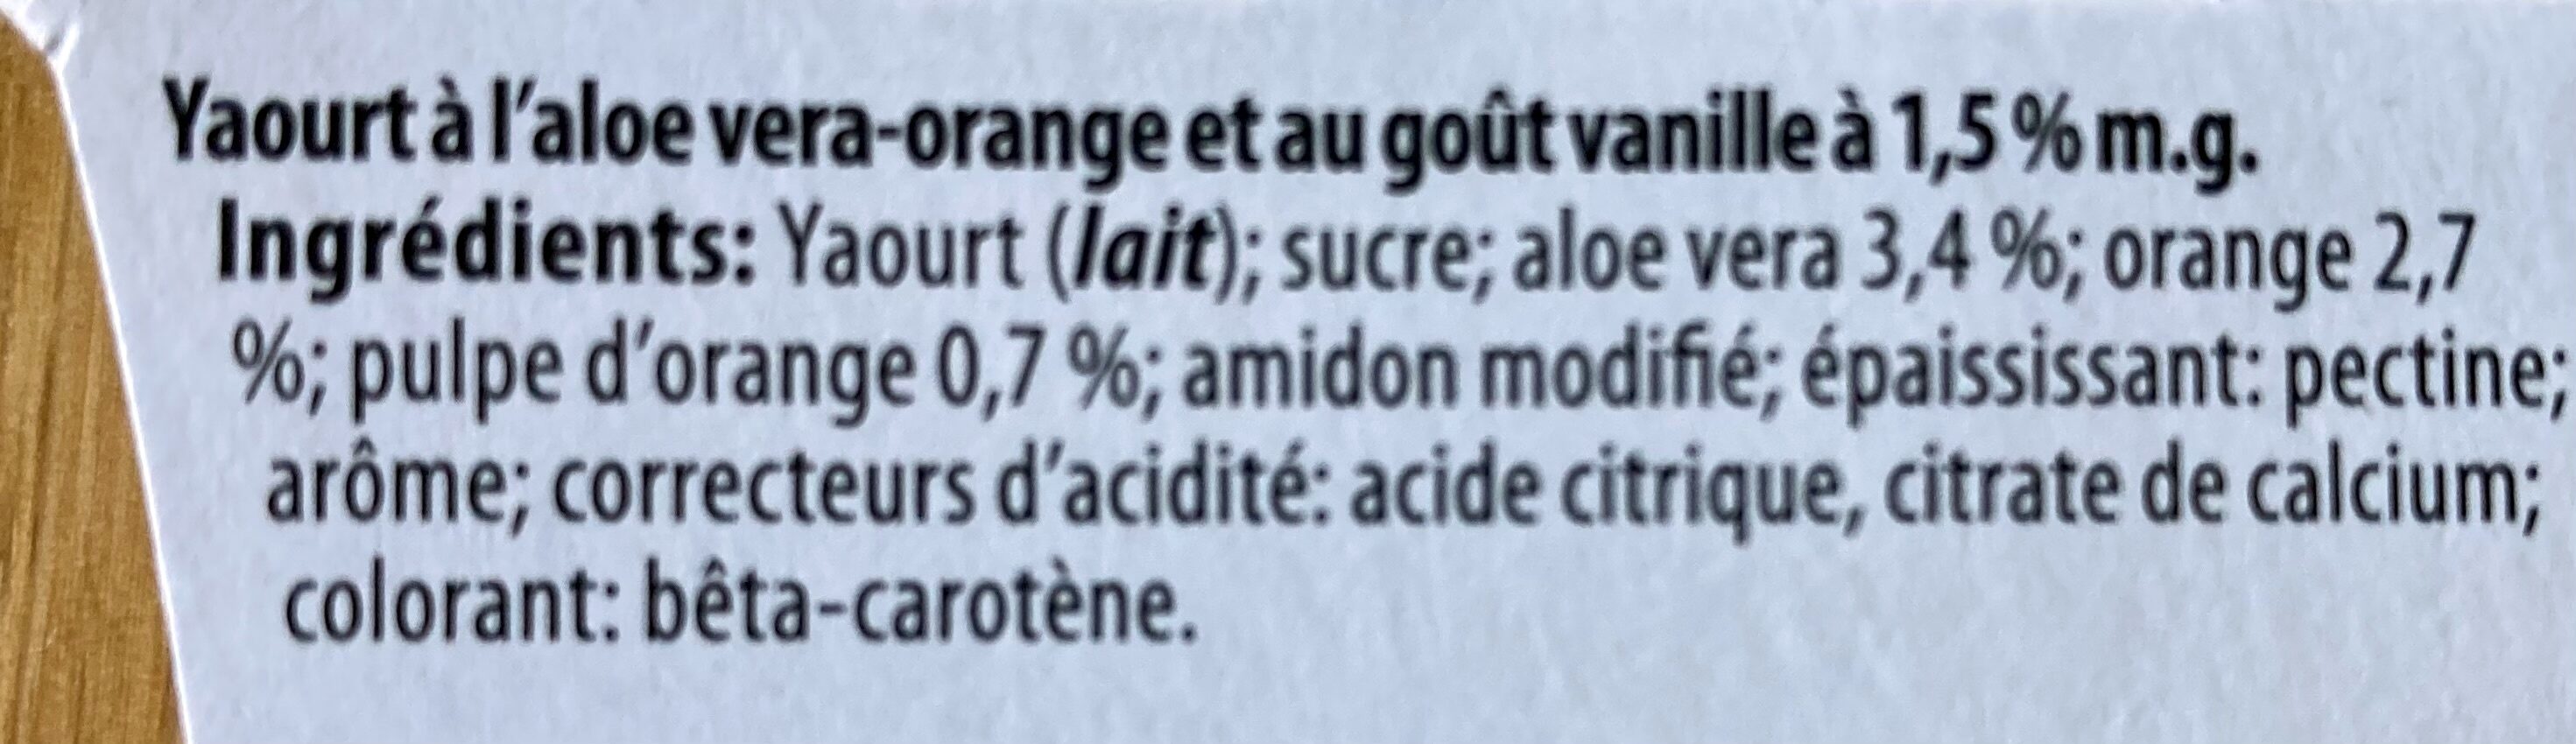 Yaourt du luxembourg - Aloe Vera Orange - Ingrédients